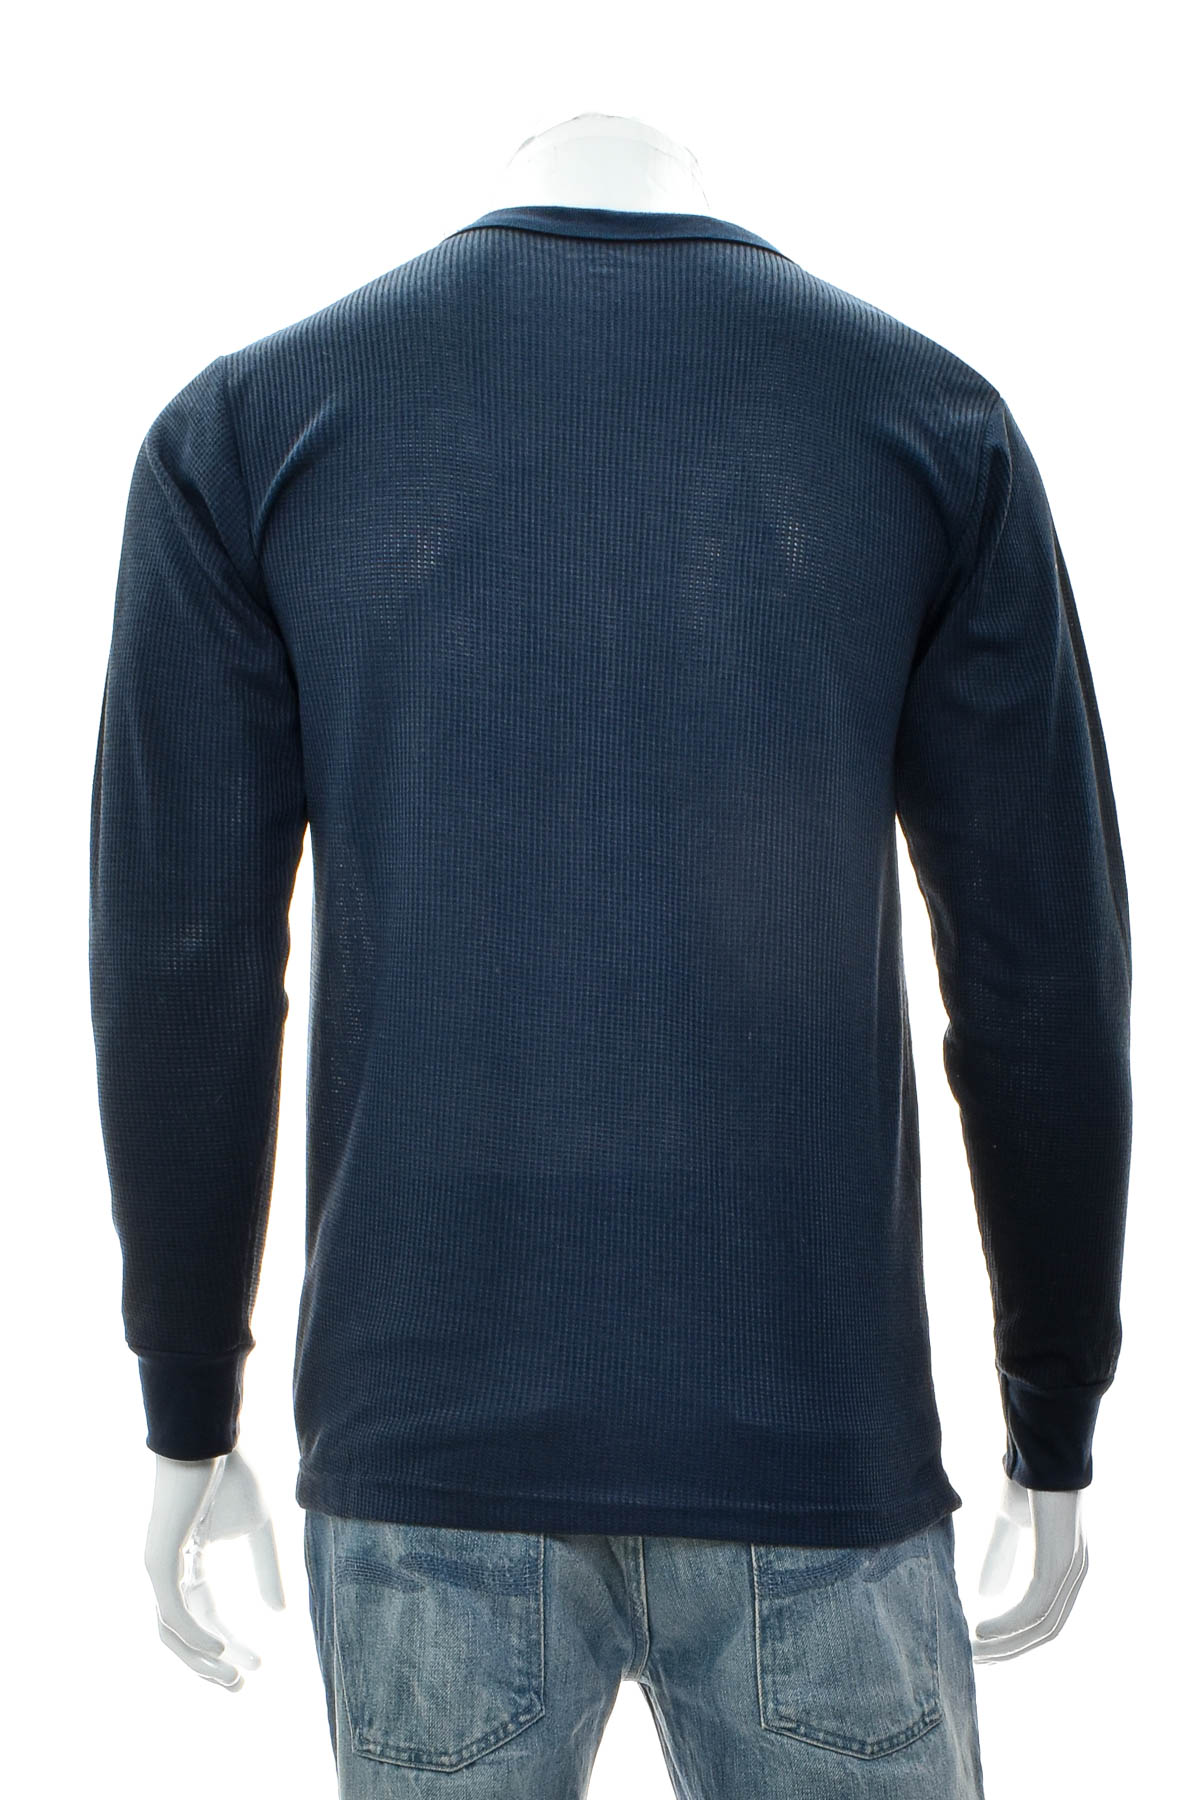 Men's sweater - CARIBBEAN JOE - 1